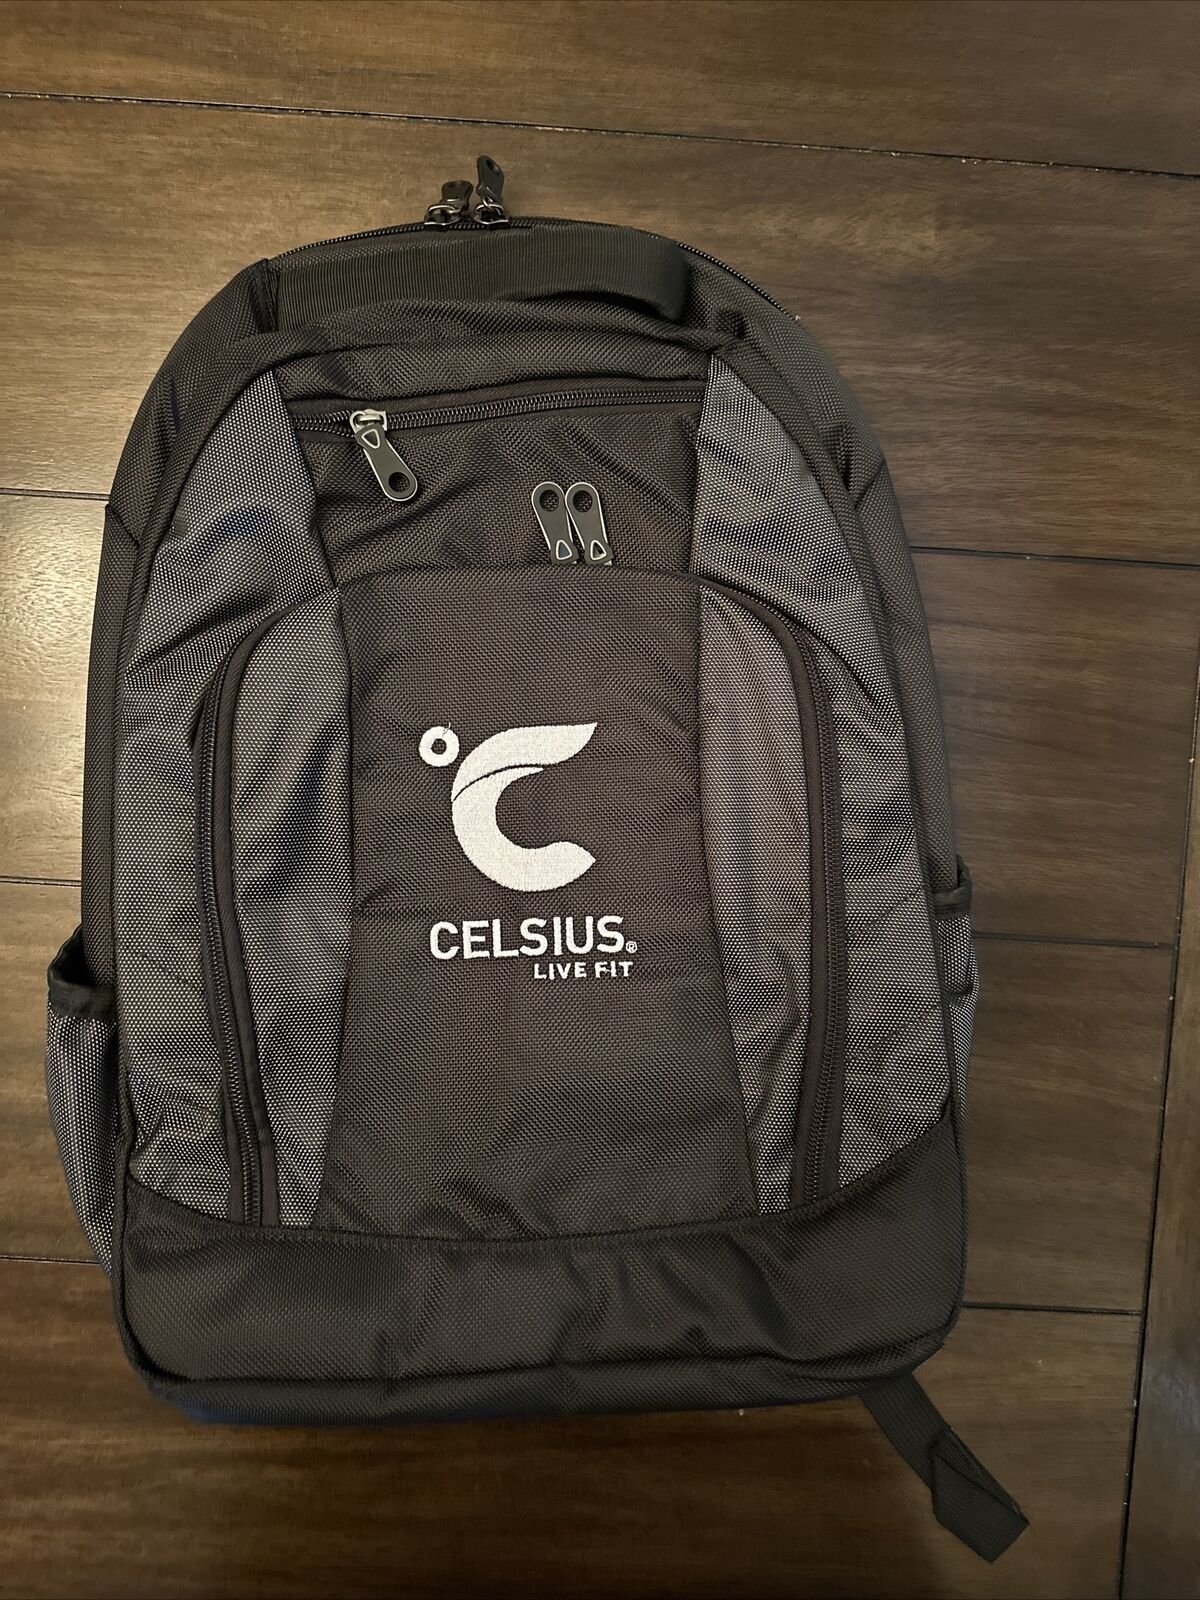 Celsius Energy Drink Live Fit Black Backpack NWOT Rare Find